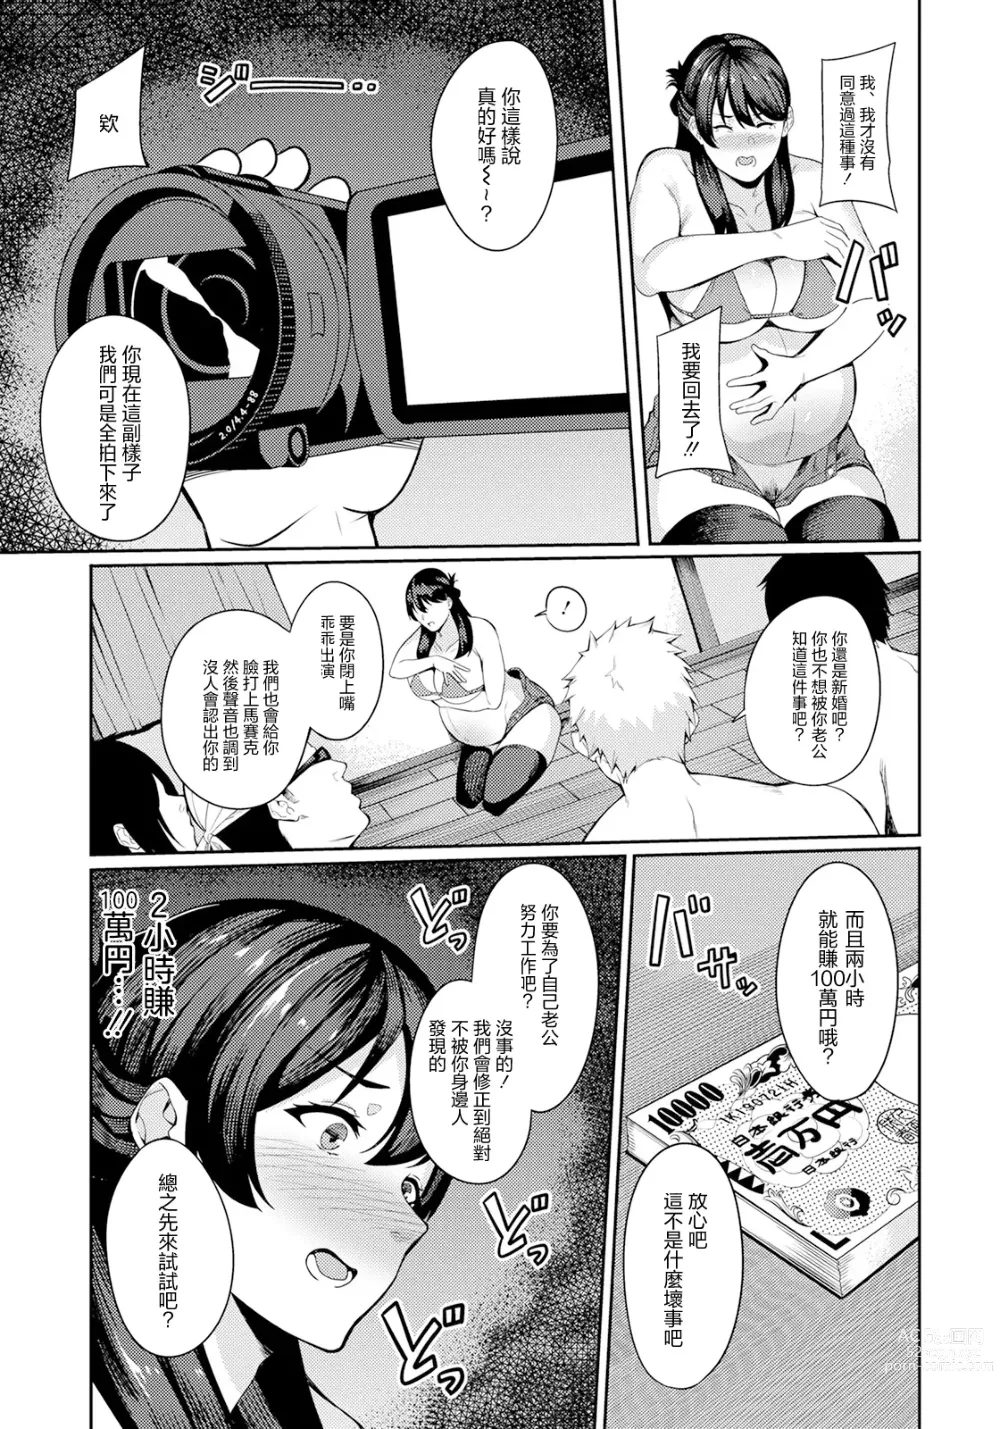 Page 7 of manga Kairaku Bitch-ka Ninpu -AV ni Otosarete-